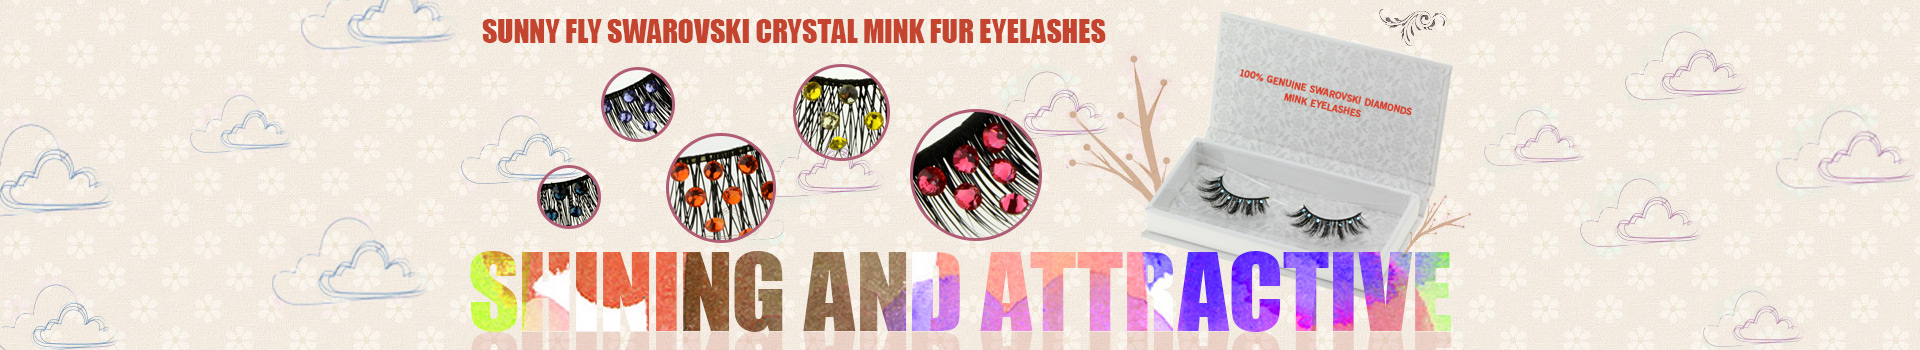 Swarovski Crystal Mink Fur Eyelashes MS27